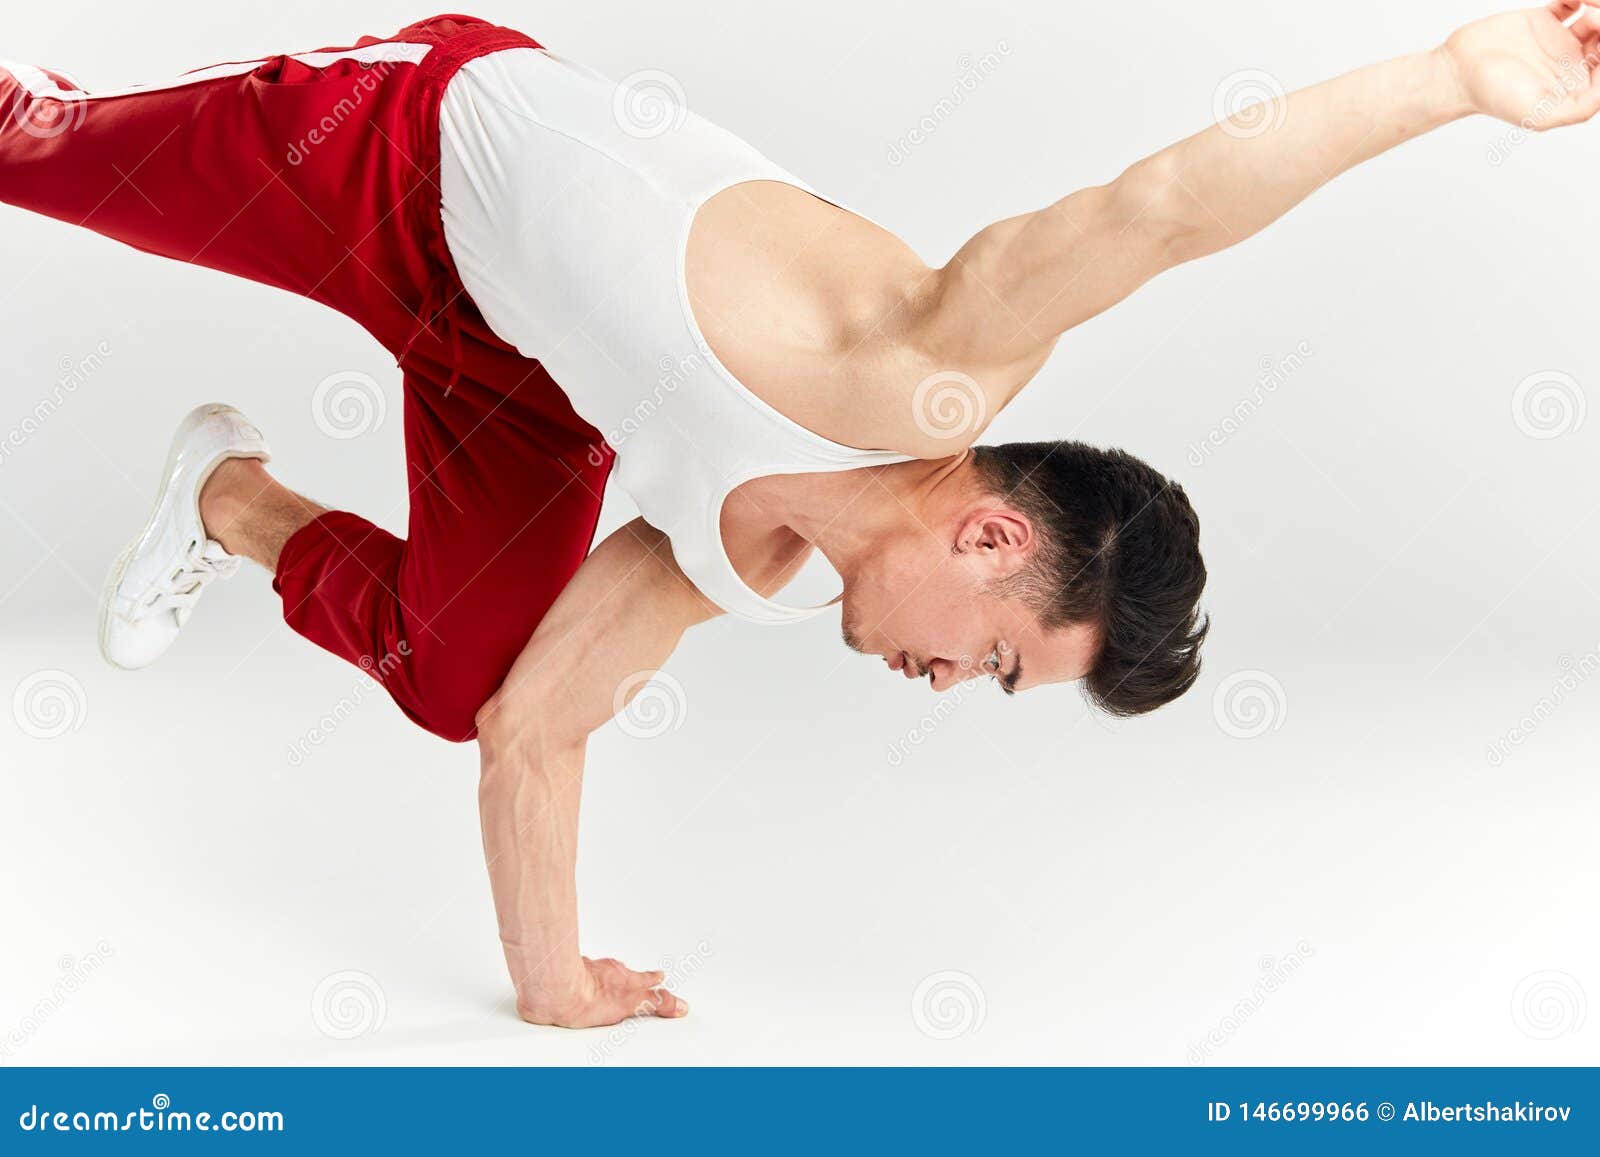 Hip Hop Acrobatic Break Dancer Breakdancing Young Man ...